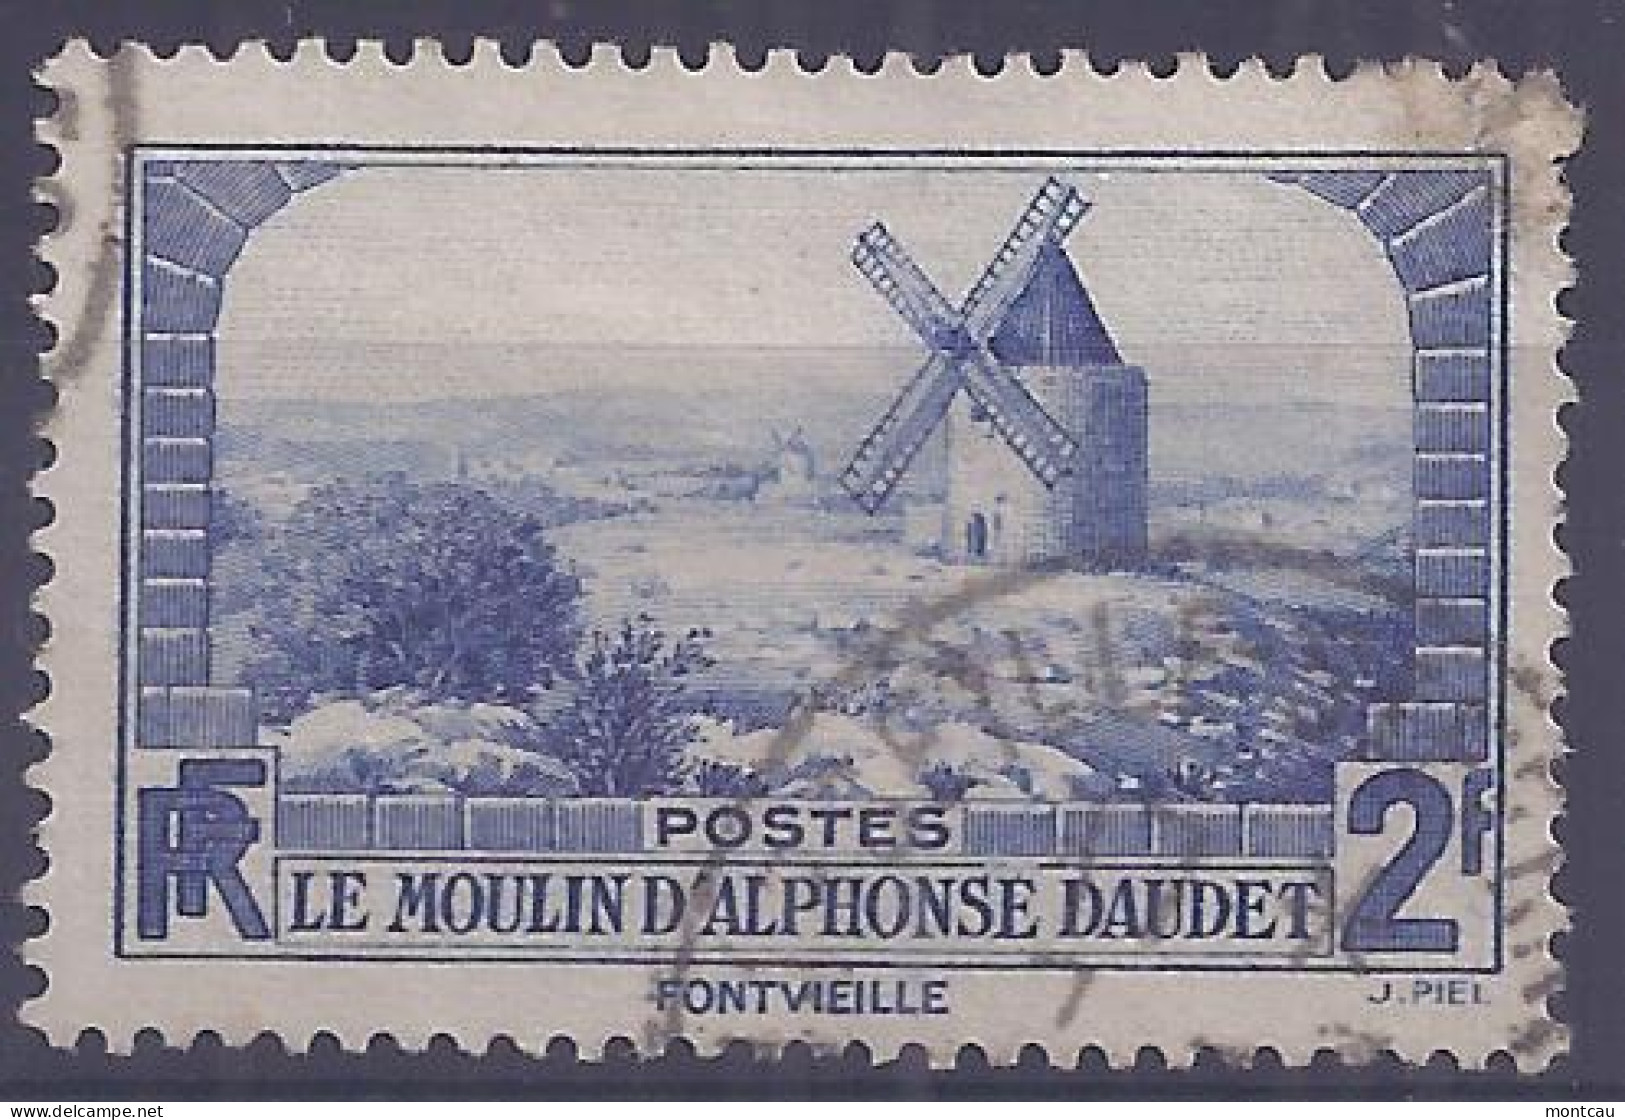 Francia 1936. YT = 311 - Usado (o). Molino De Alfonso Daudet - Usados